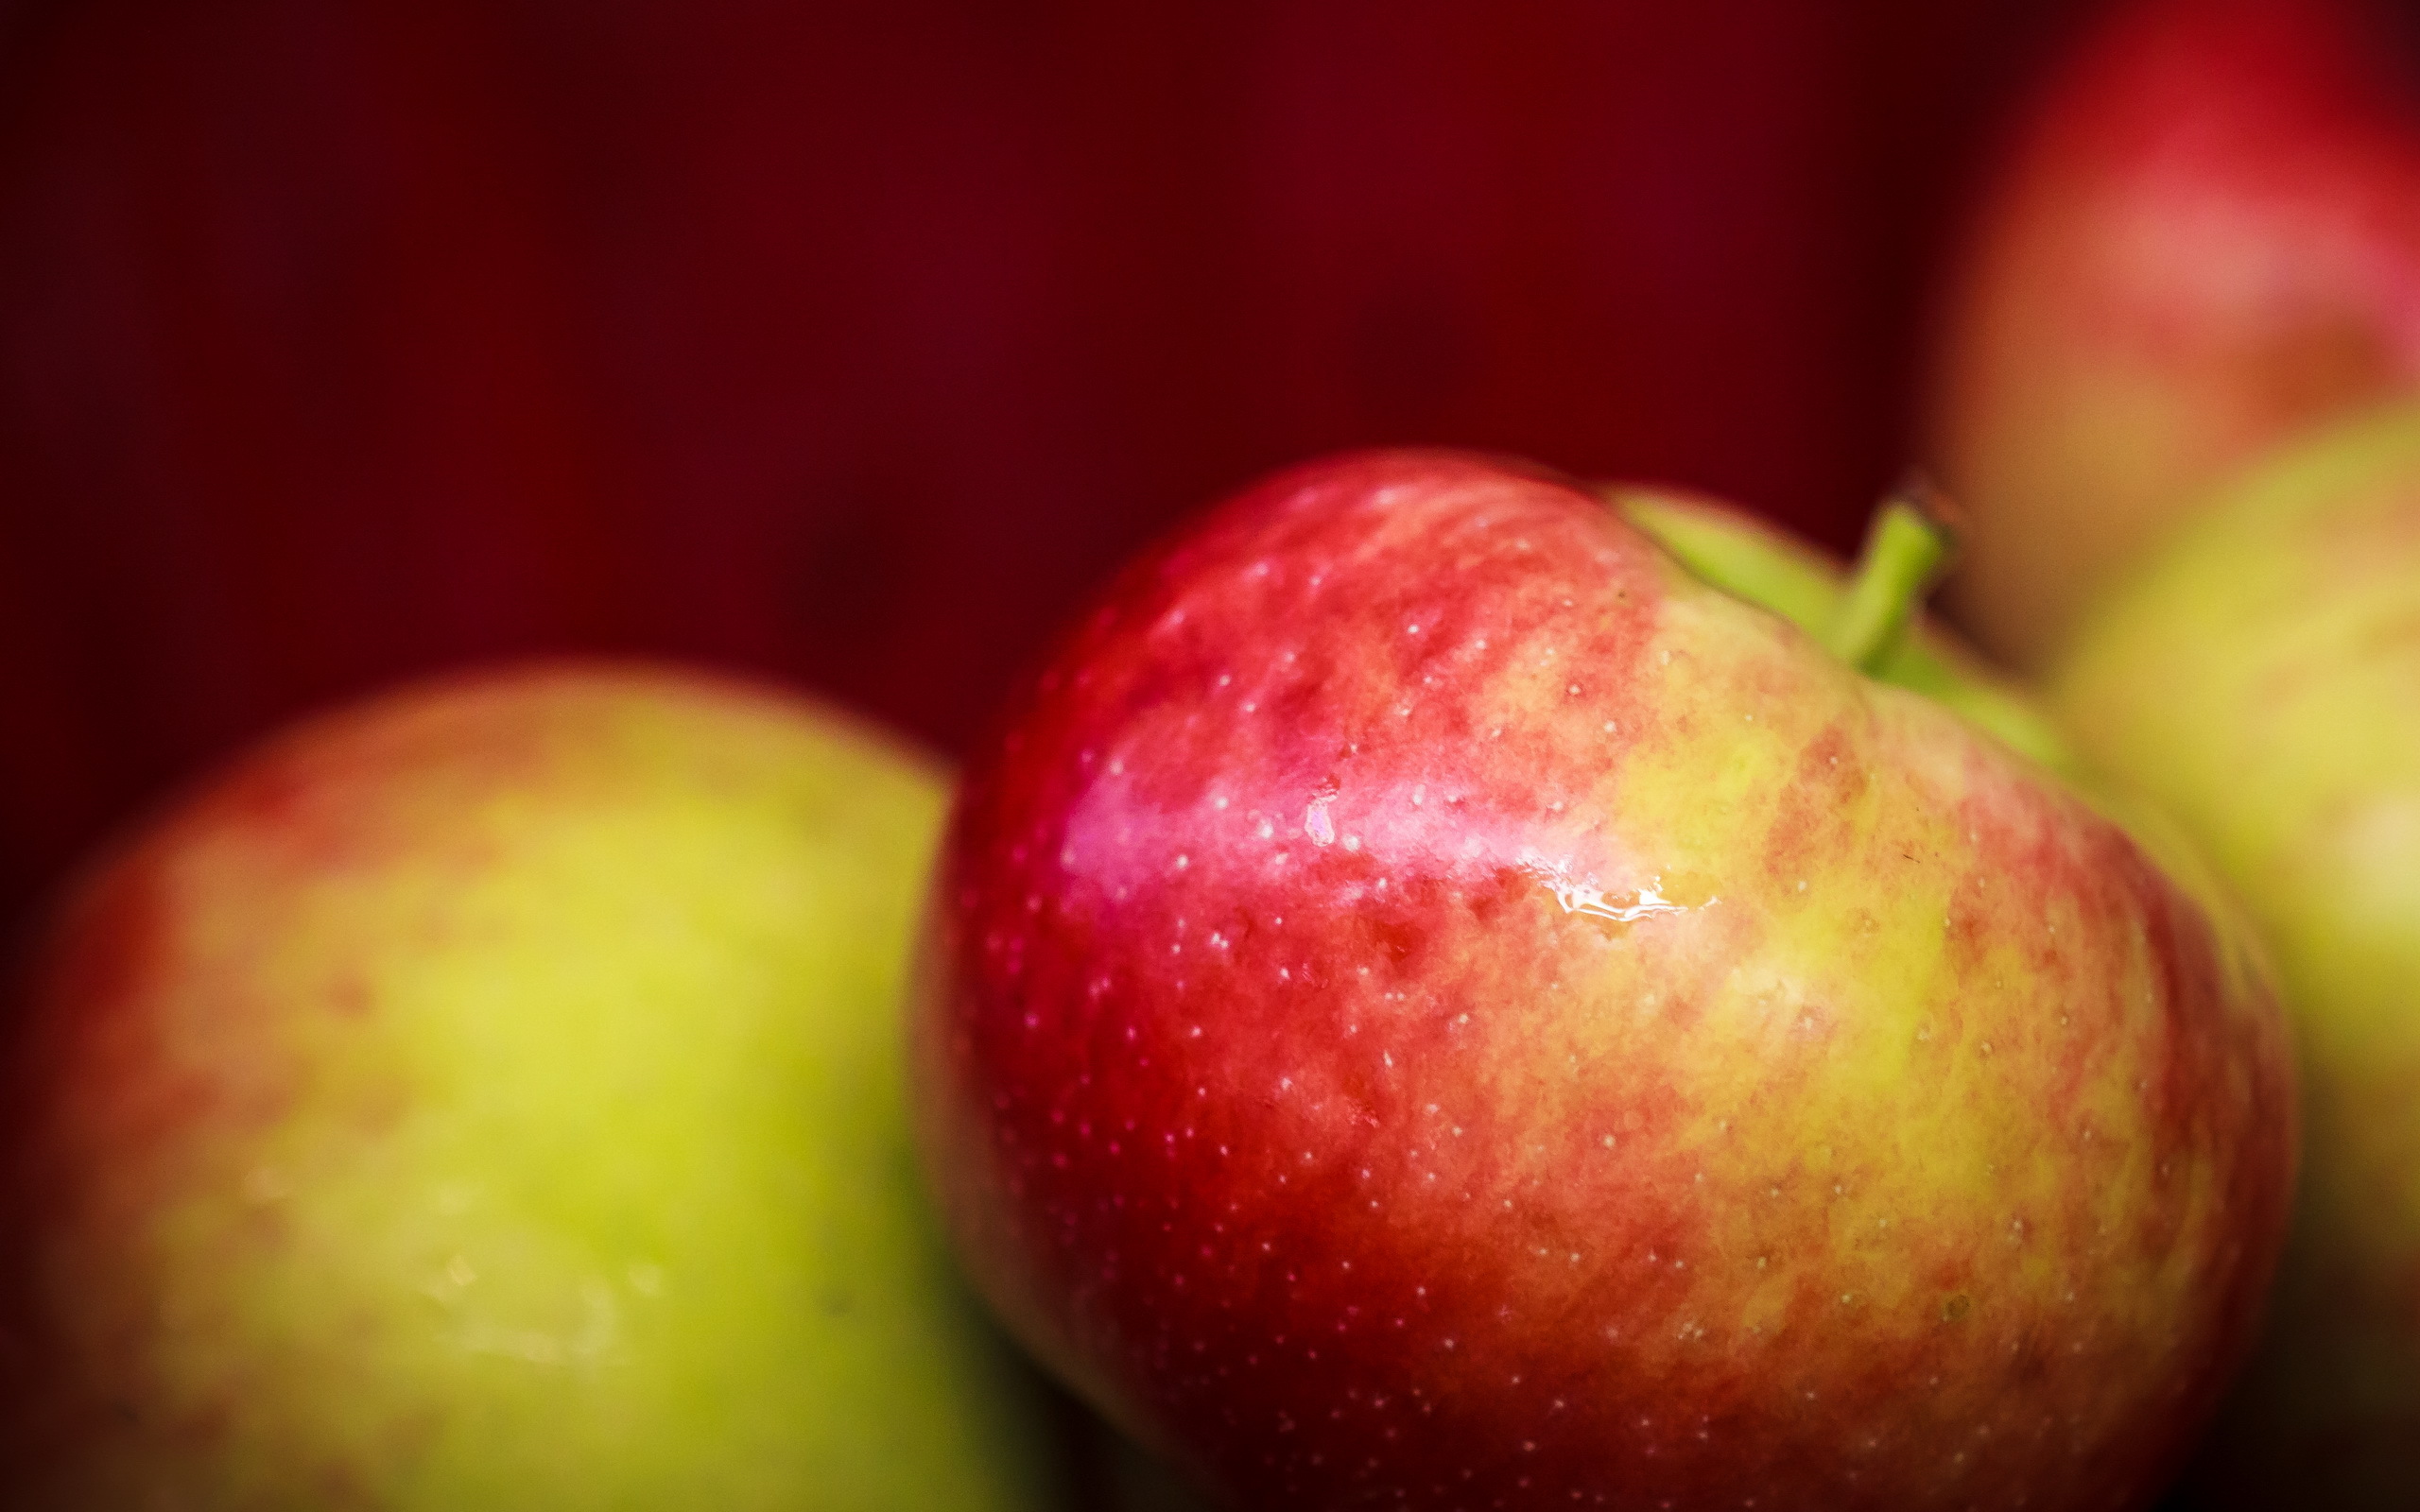 zdjęcia Jabłka Jedzenie Z bliska 2560x1600 żywność zbliżenie